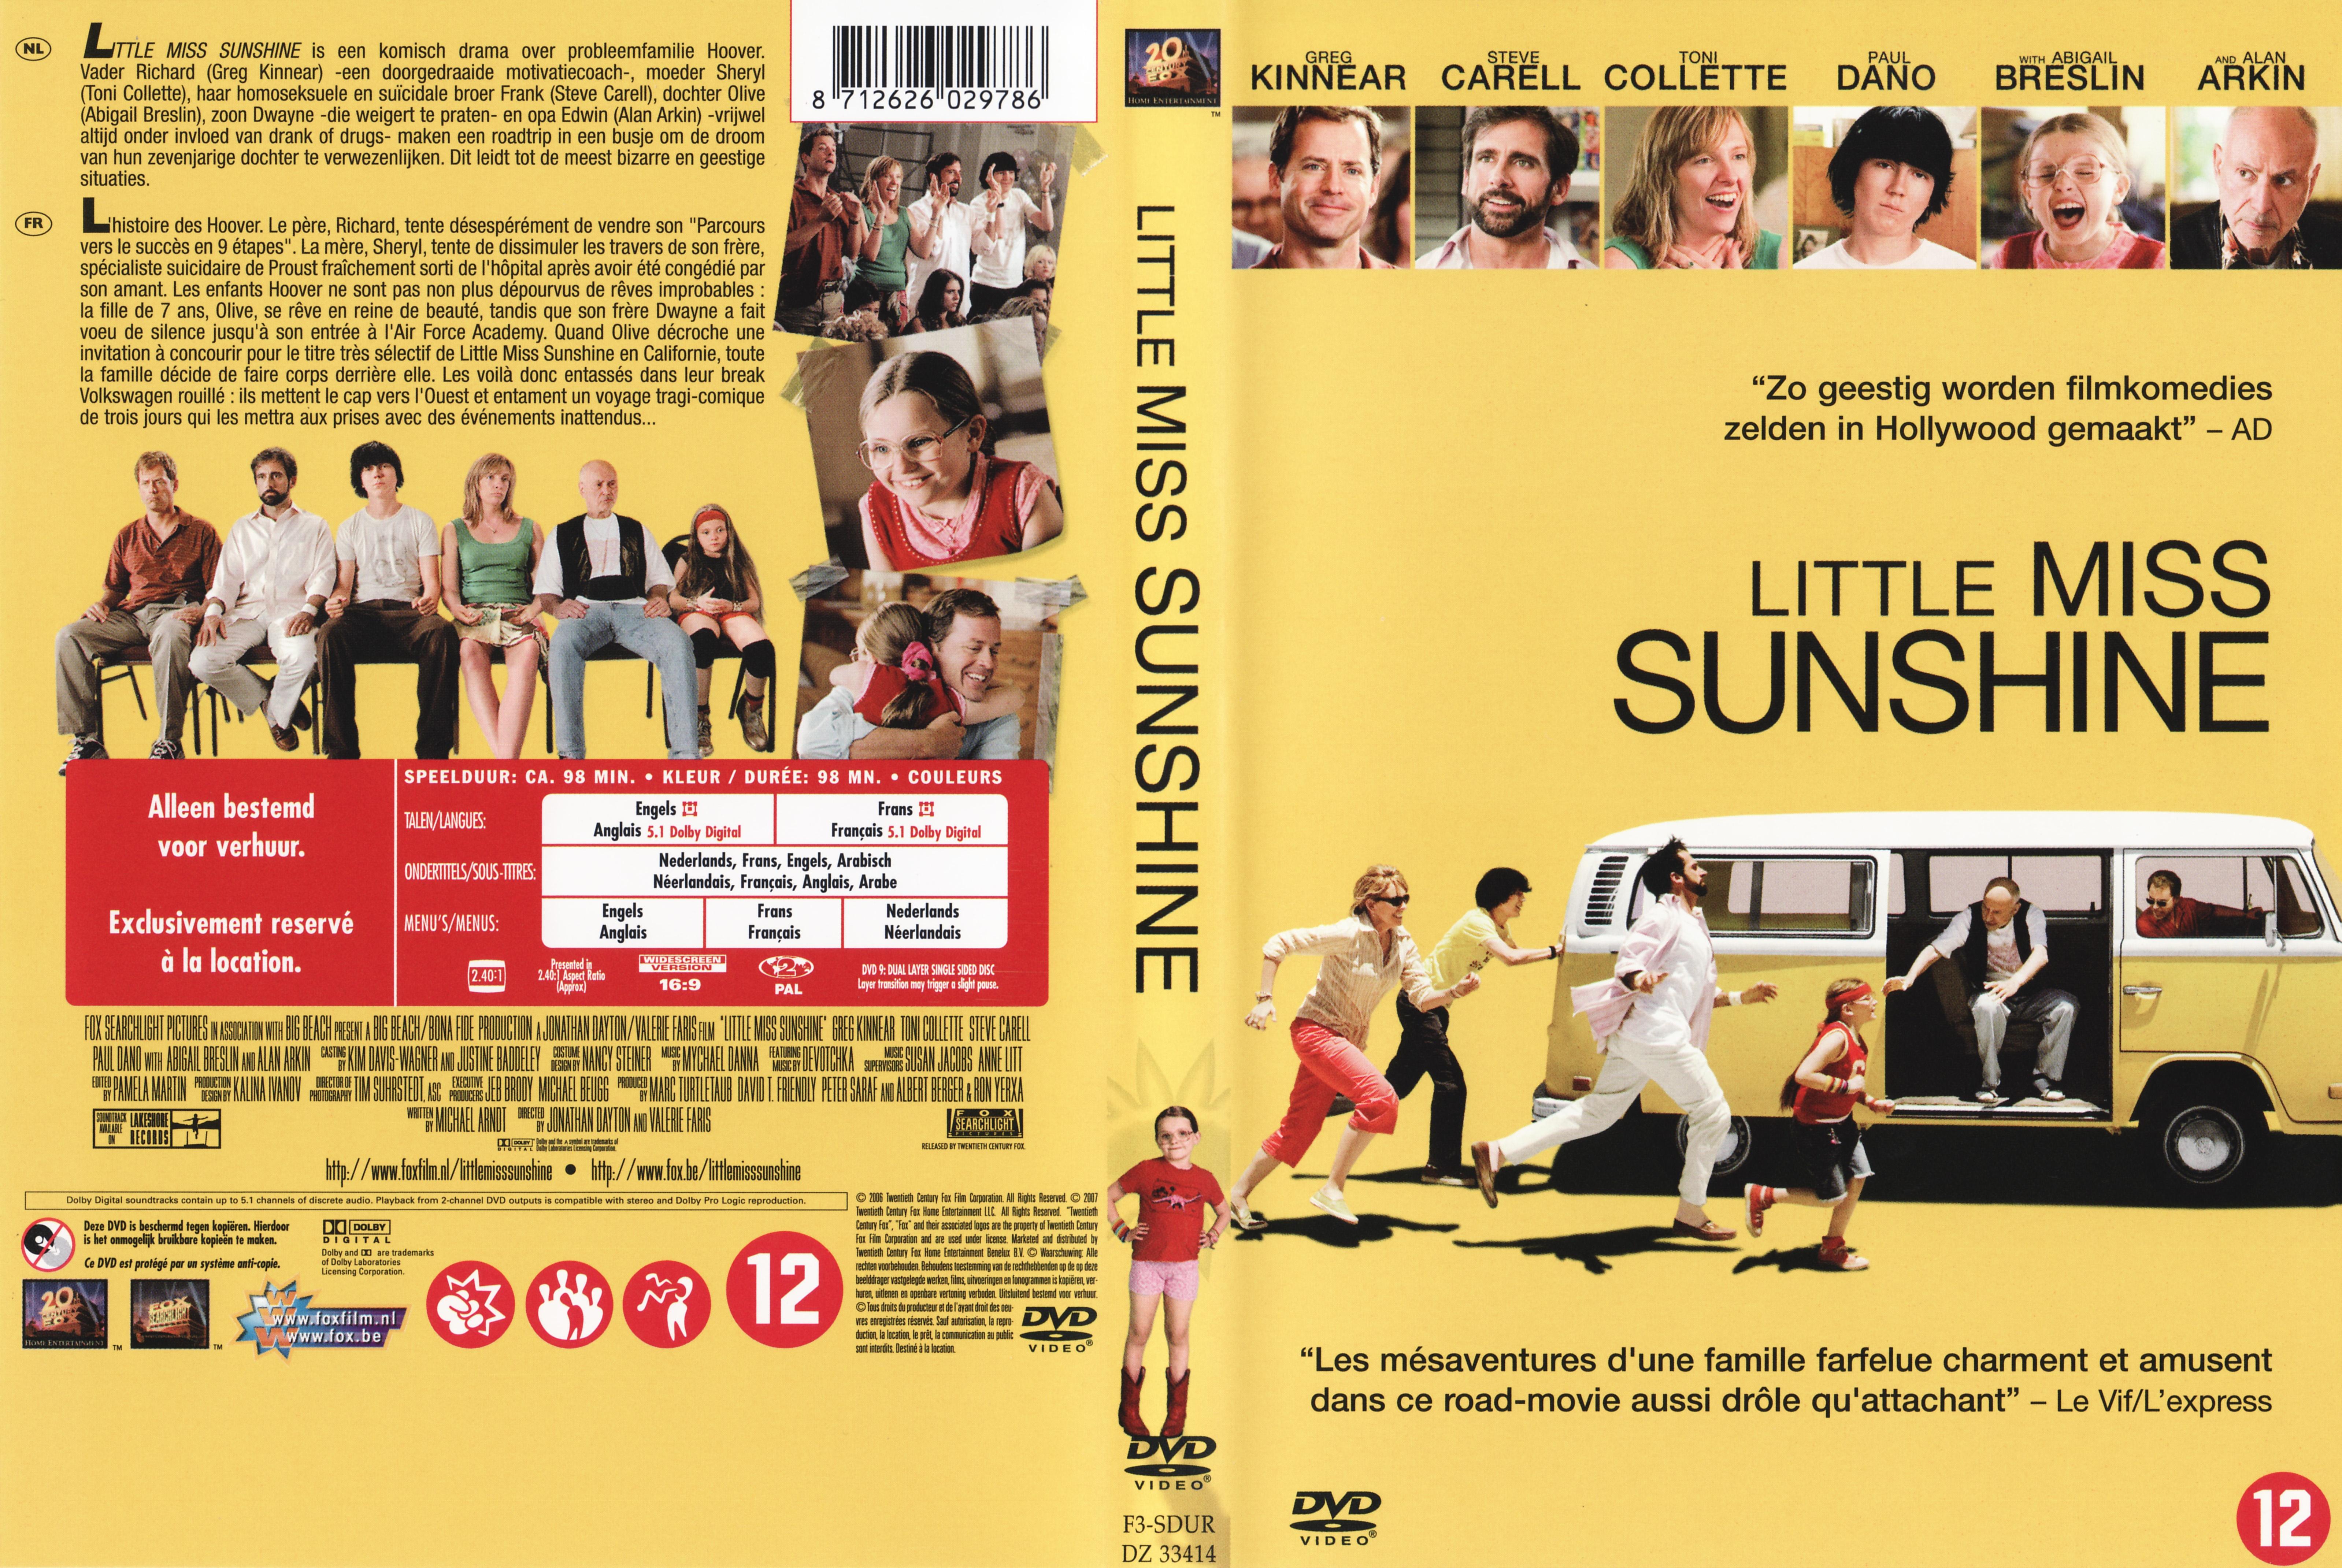 Jaquette DVD Little miss sunshine v2